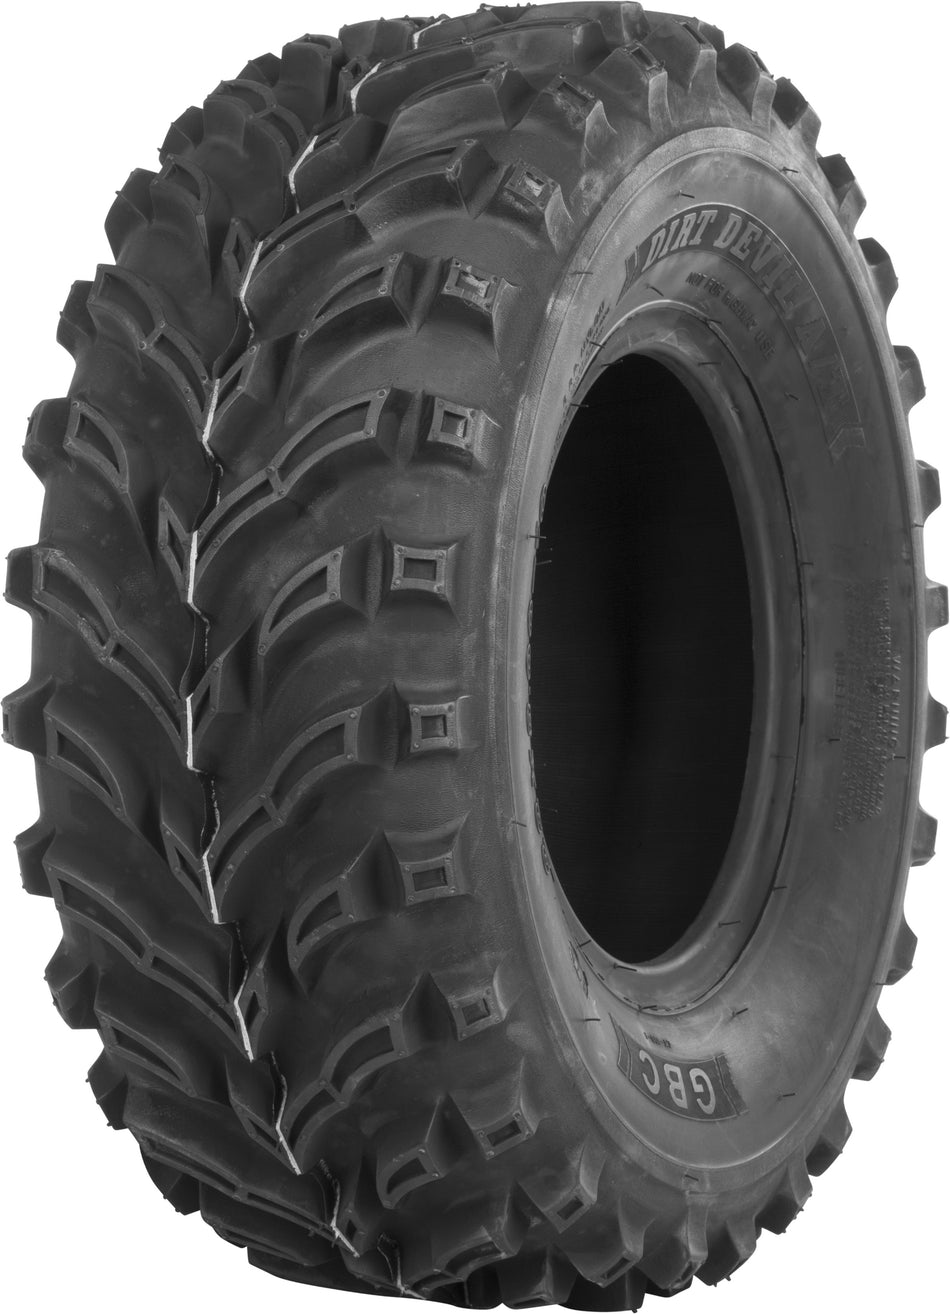 GBC Tire Dirt Devil A/T Rear 24x10-11 Bias Lr-395lbs AR1161